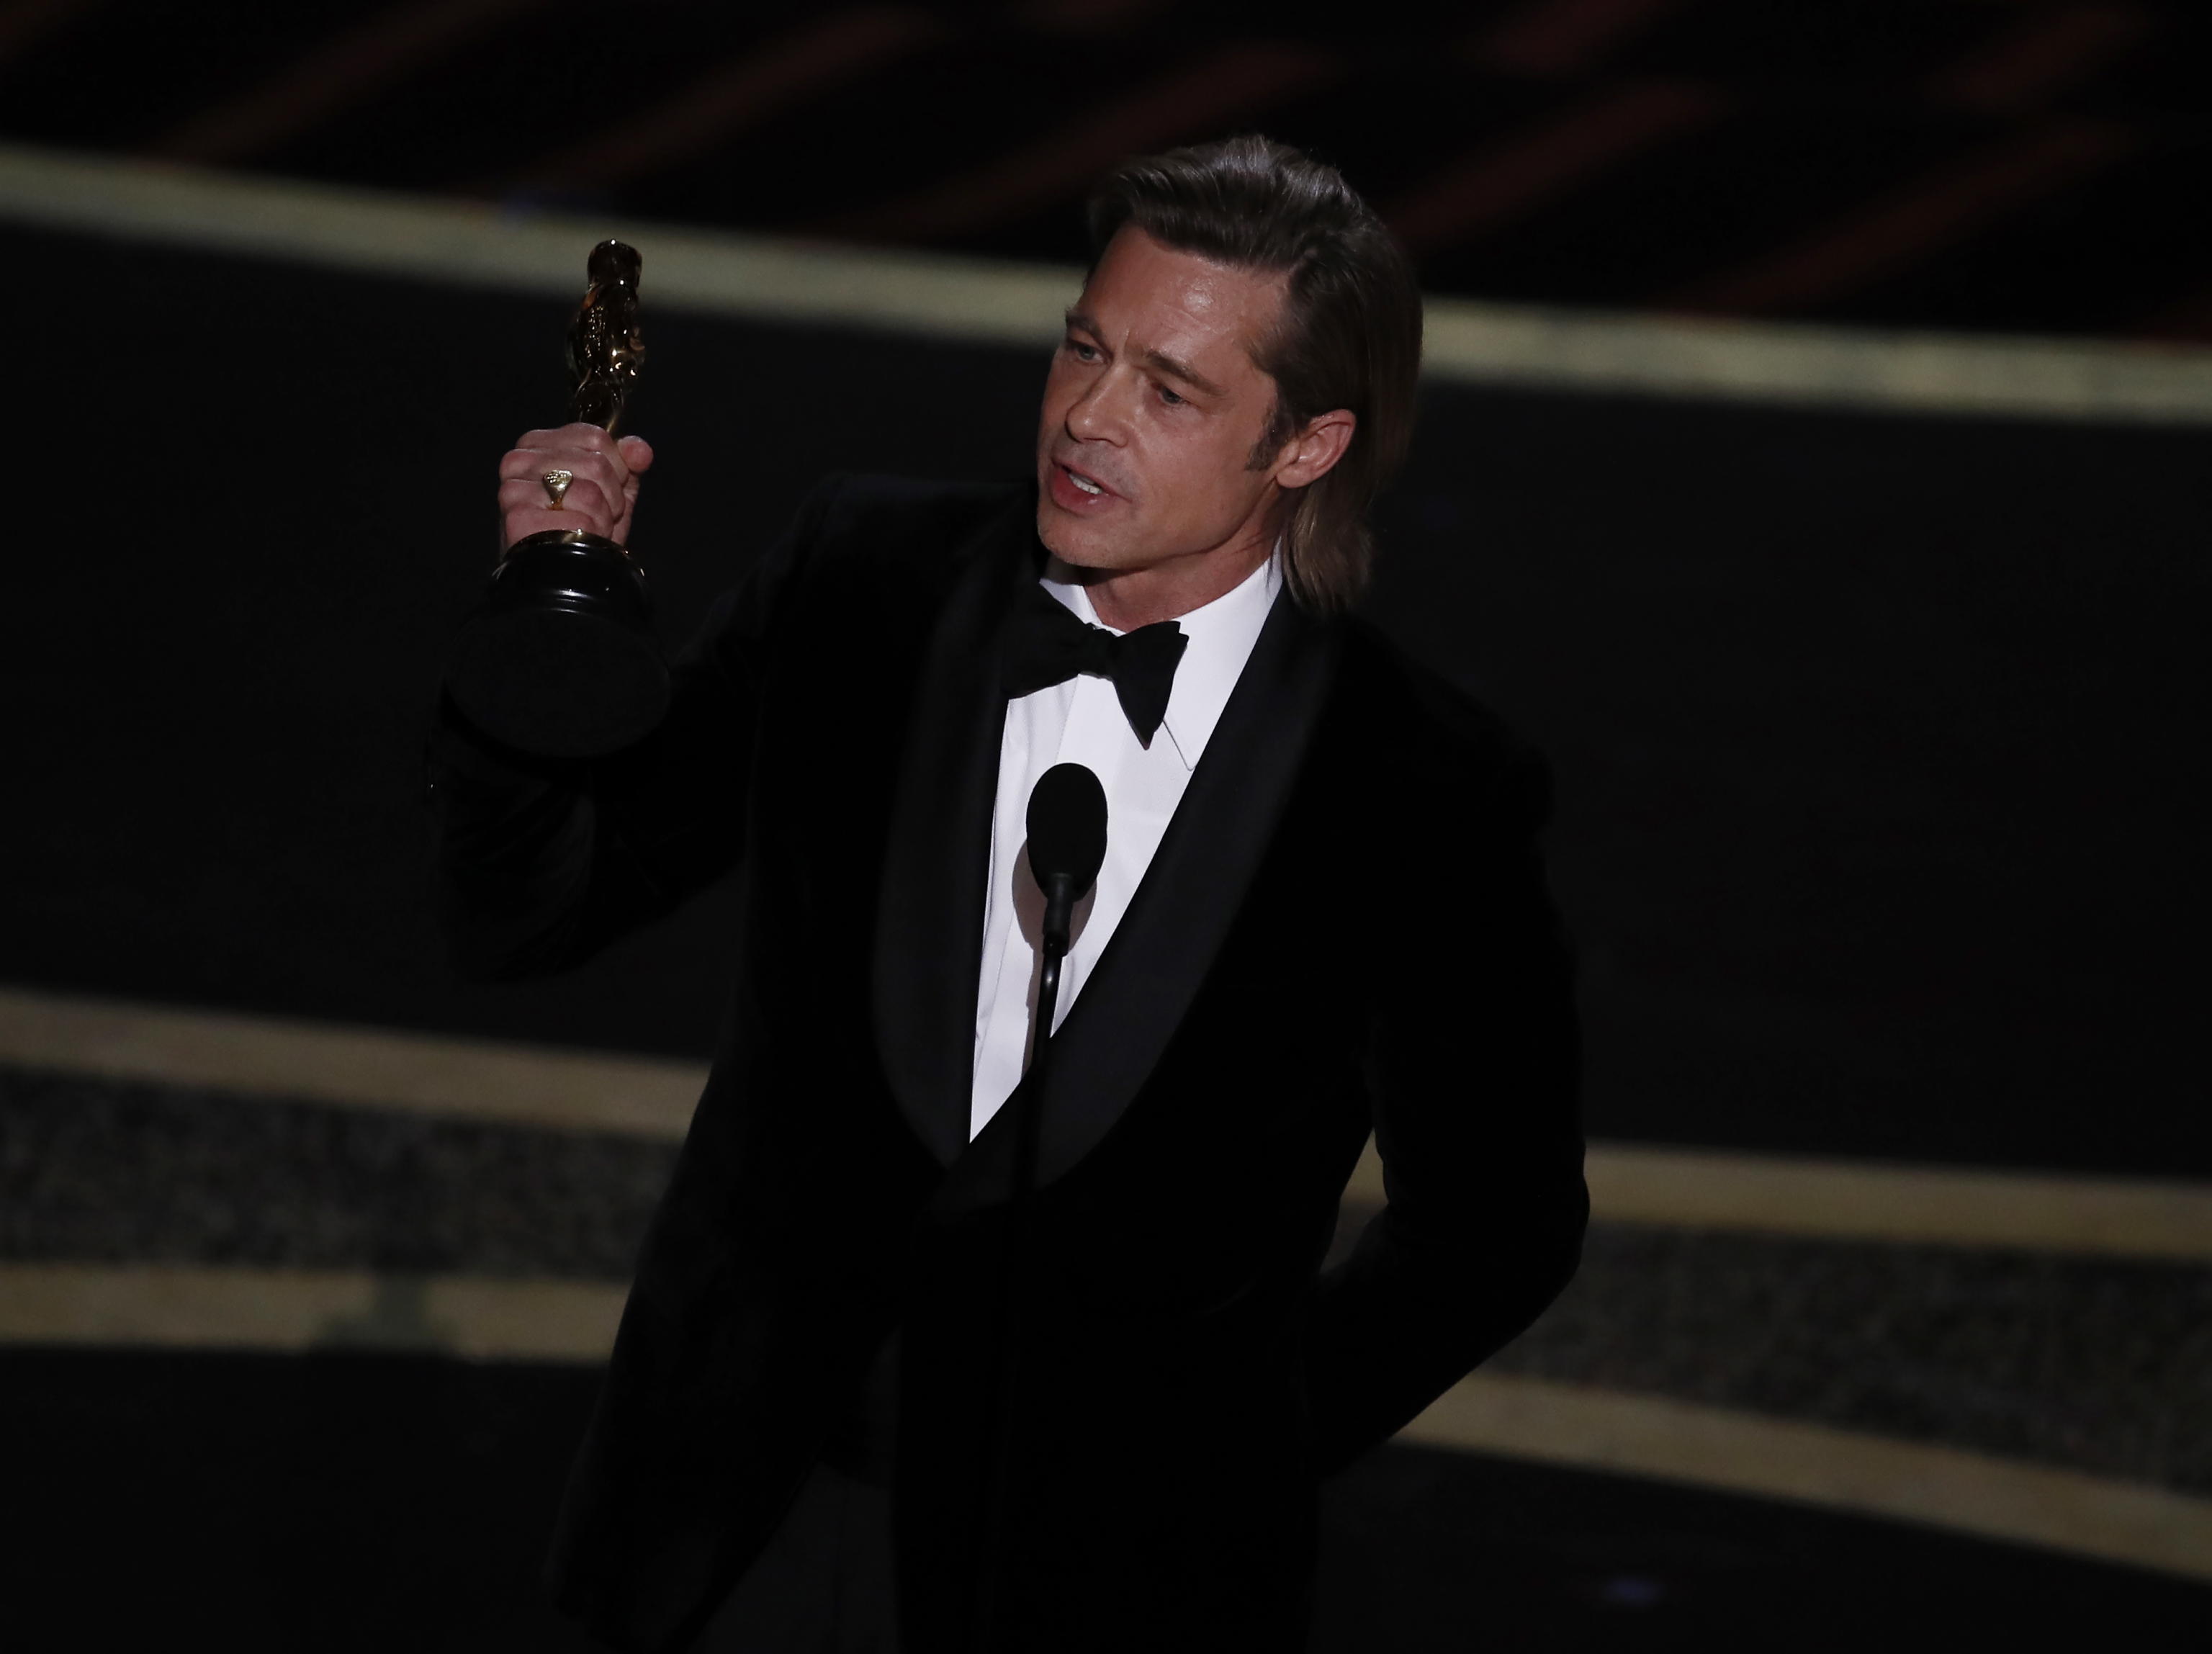 Il miglior attore non protagonista è Brad Pitt. Per lui è il primo Oscar da attore, aveva vinto come produttore